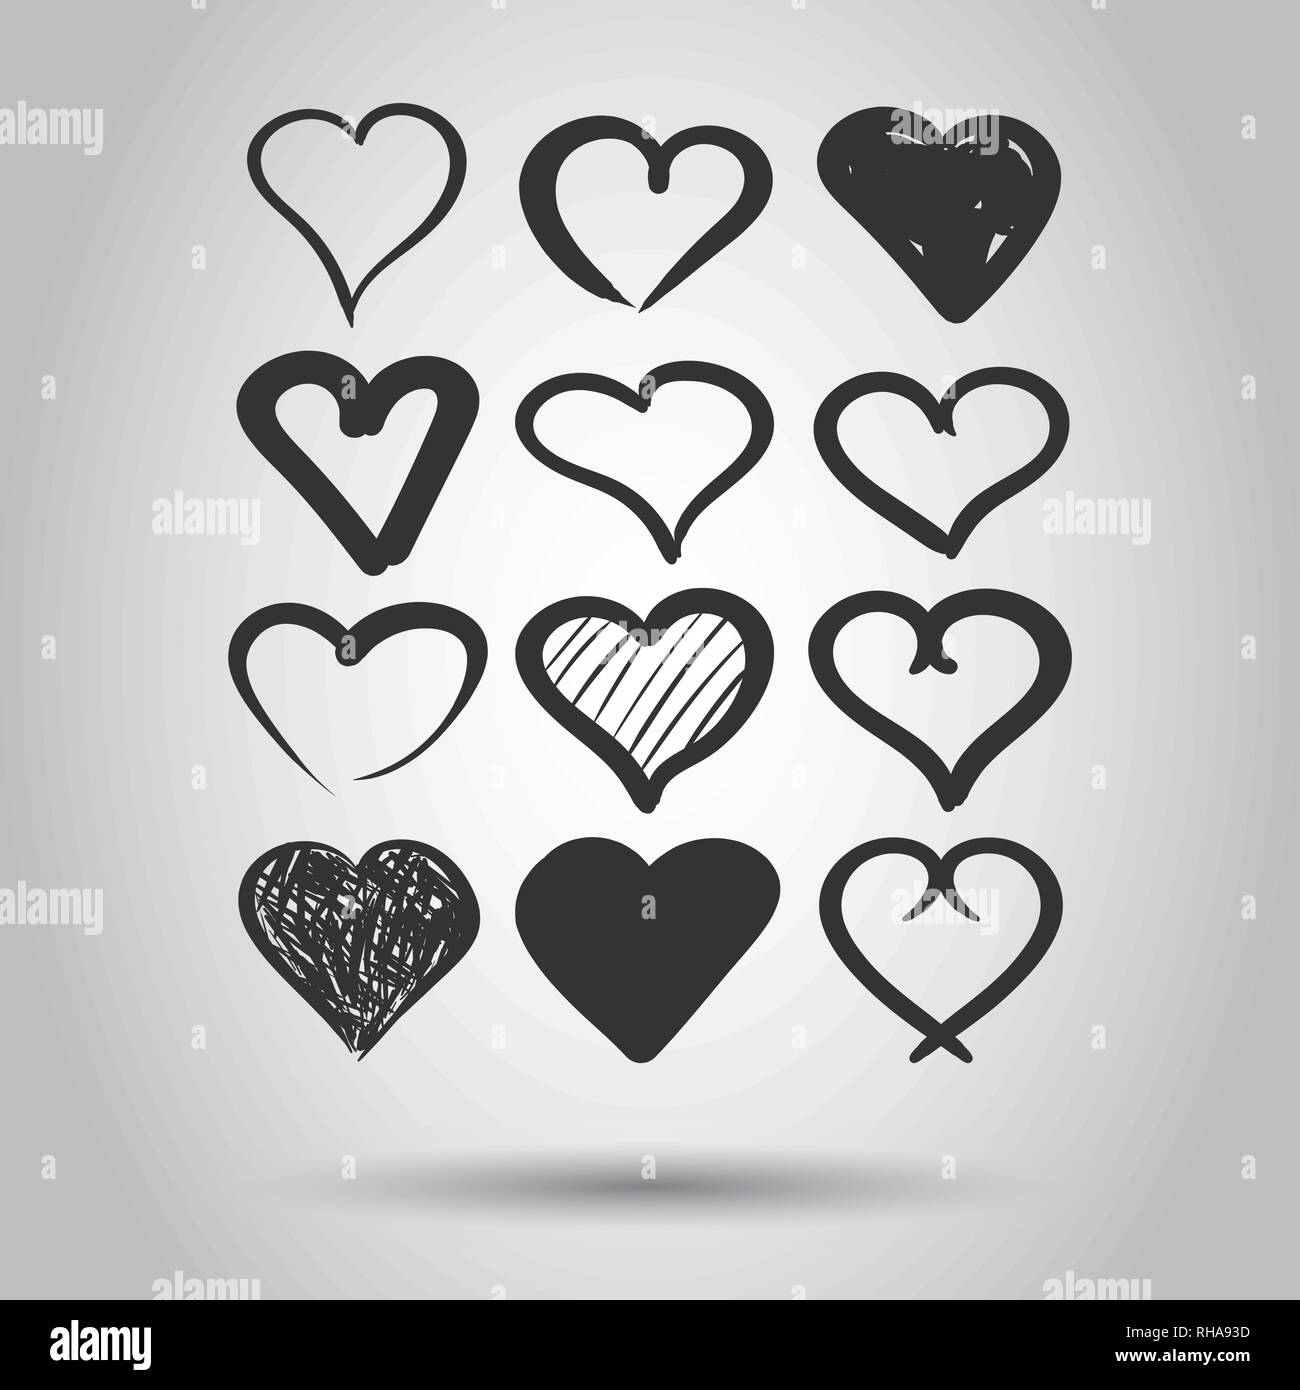 Festlegen Der Hand Herzen Vektor Symbol Gezeichnet Liebe Skizze Doodle Herz Abbildung Handdrawn Valentine Konzept Stock Vektorgrafik Alamy